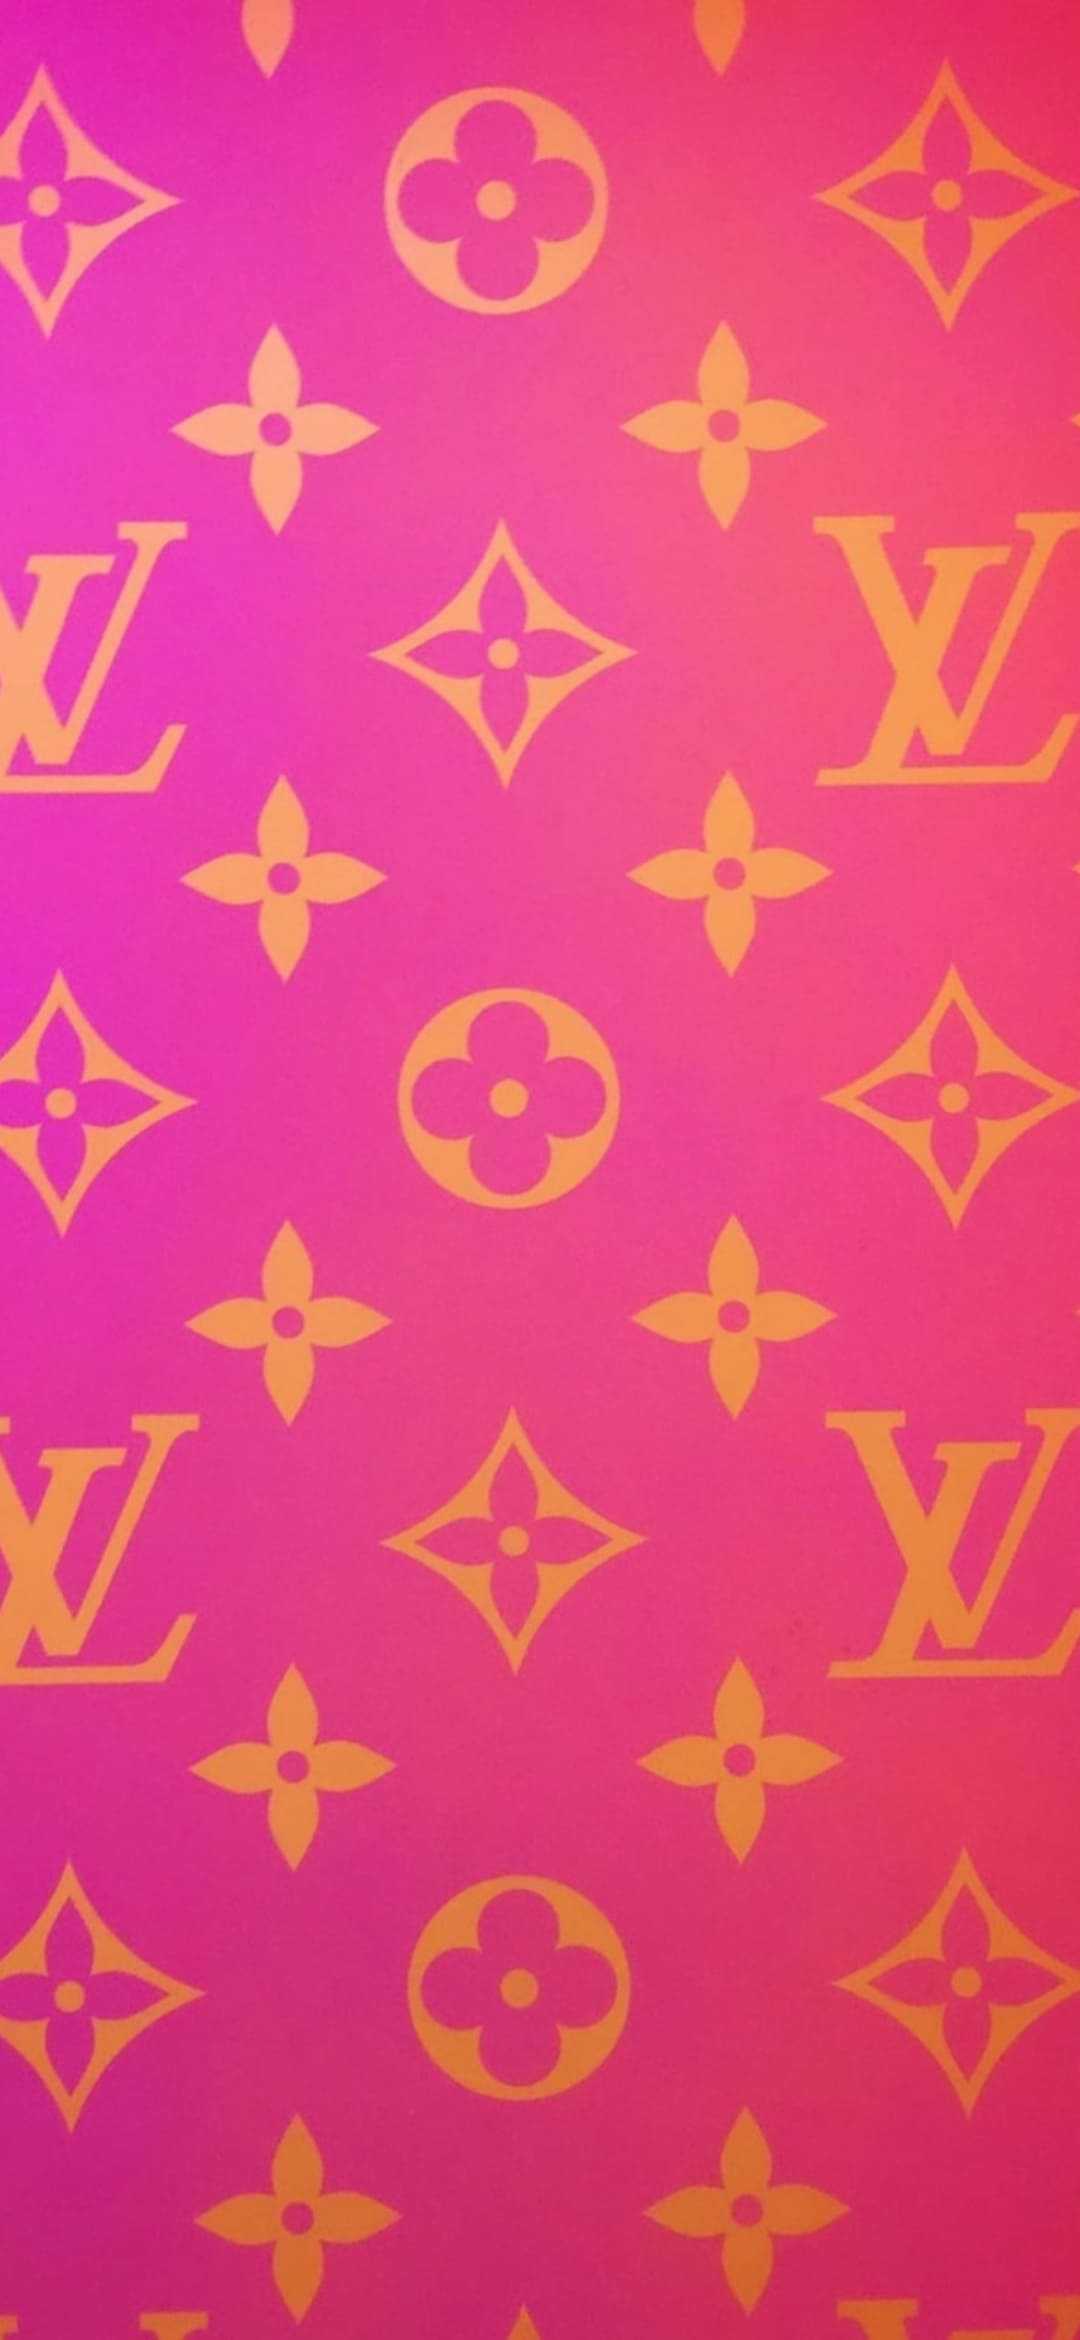 Louis Vuitton Background - iXpap